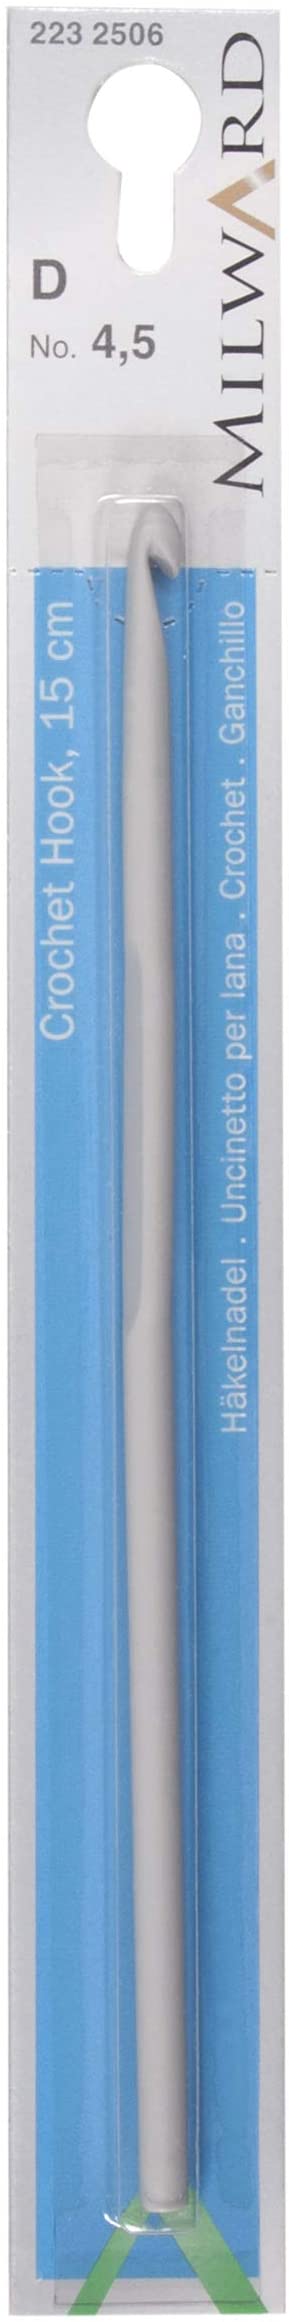 Cârlig de croșetat MILWARD pentru lână, 15cm, aluminiu, gri perlat, 4,5 mm